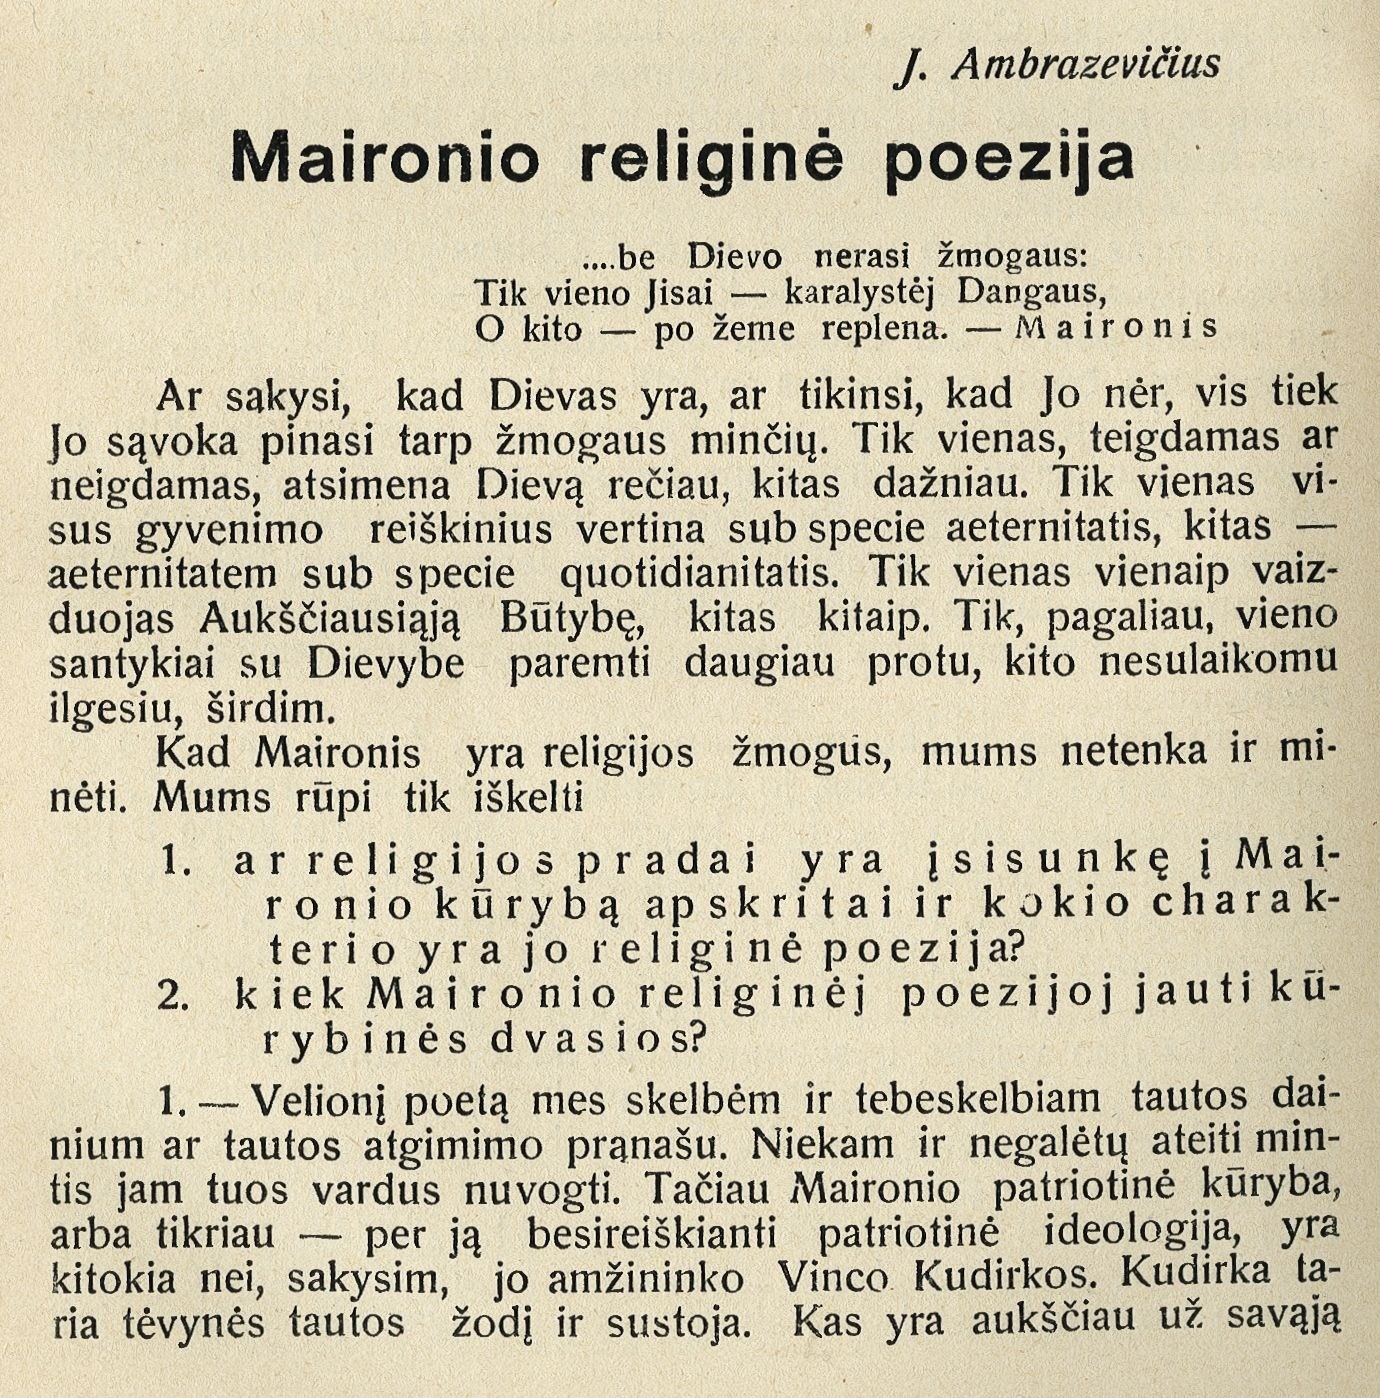 Maironio religinė poezija / J. Ambrazevičius // Tiesos kelias. – 1932, Nr. 12, p. 802–812.